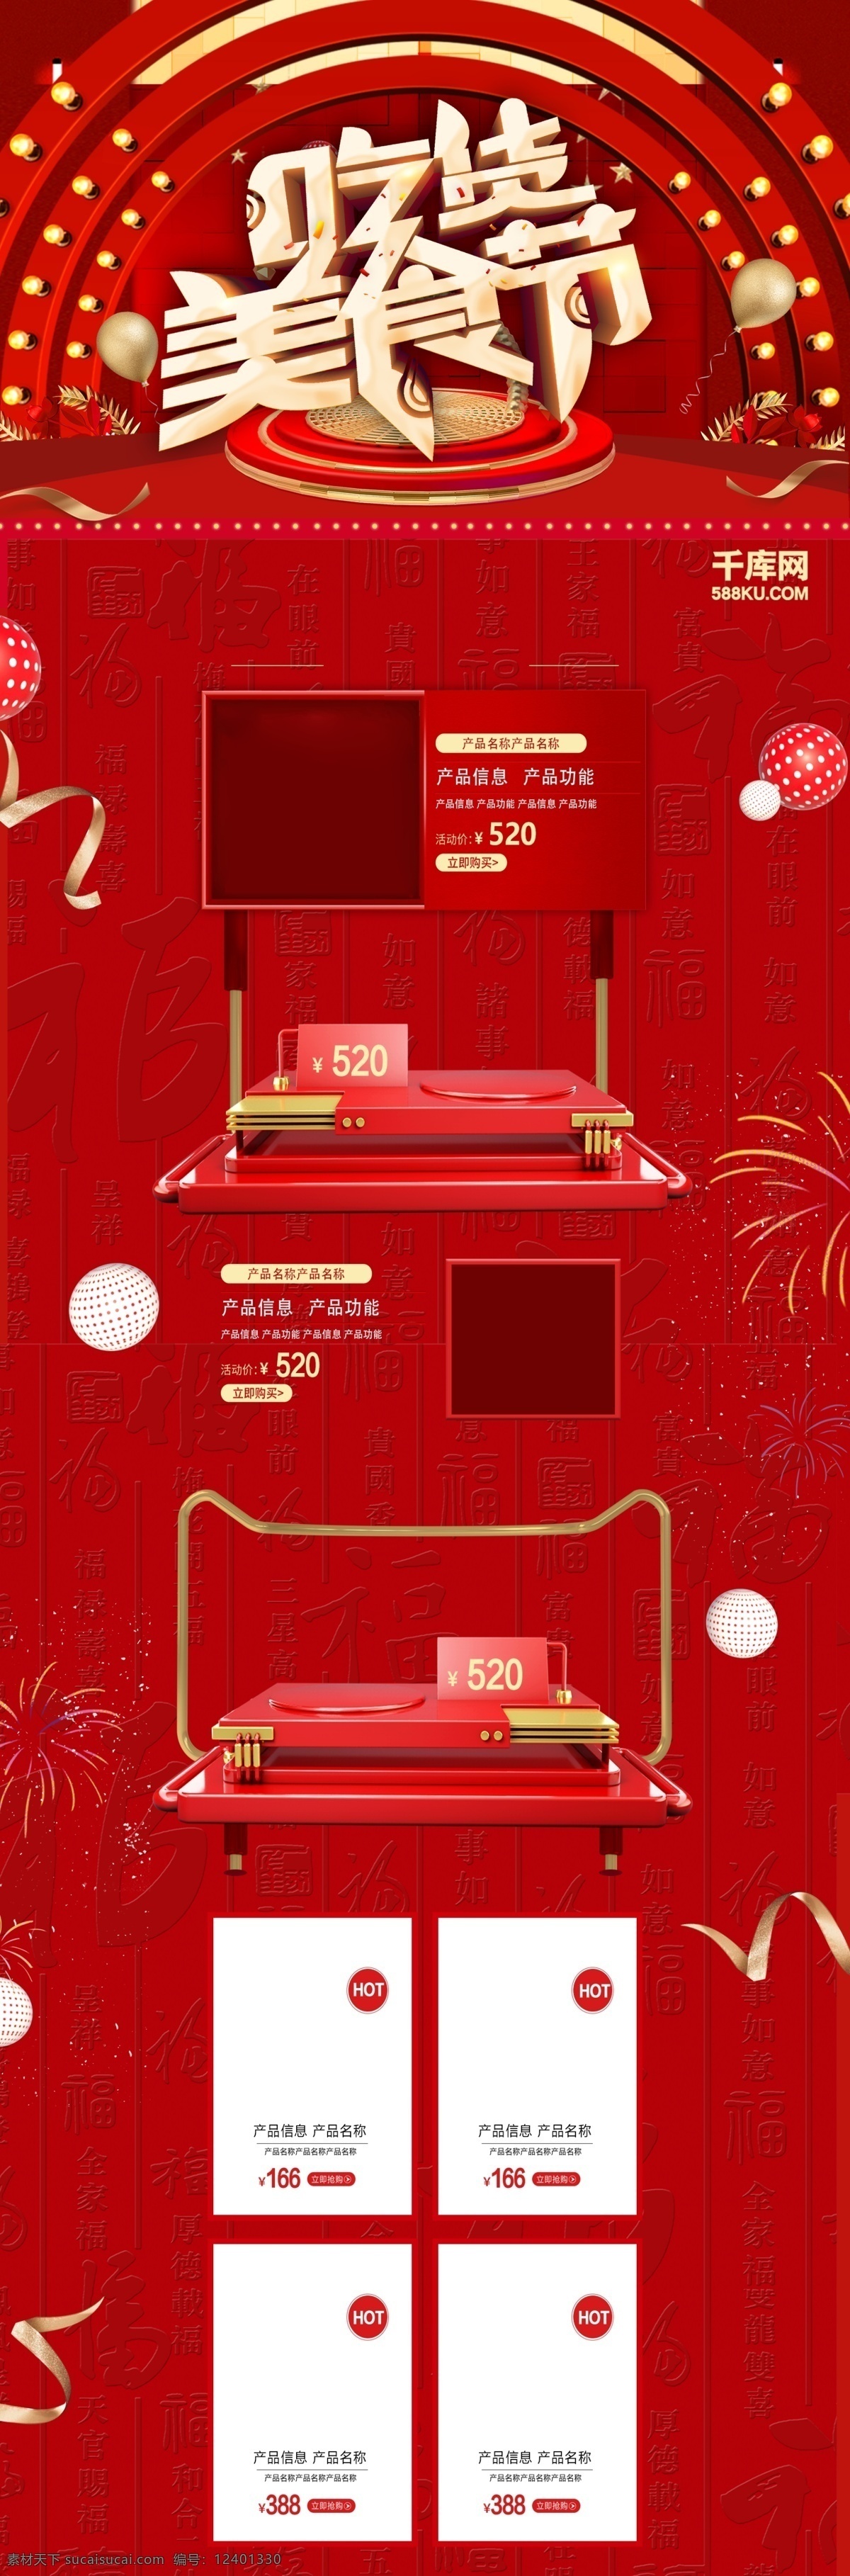 天猫 吃货 美食节 首页 千库原创 c4d 电商 中国红 舞台 装饰球 红金色系 金丝带 烟花